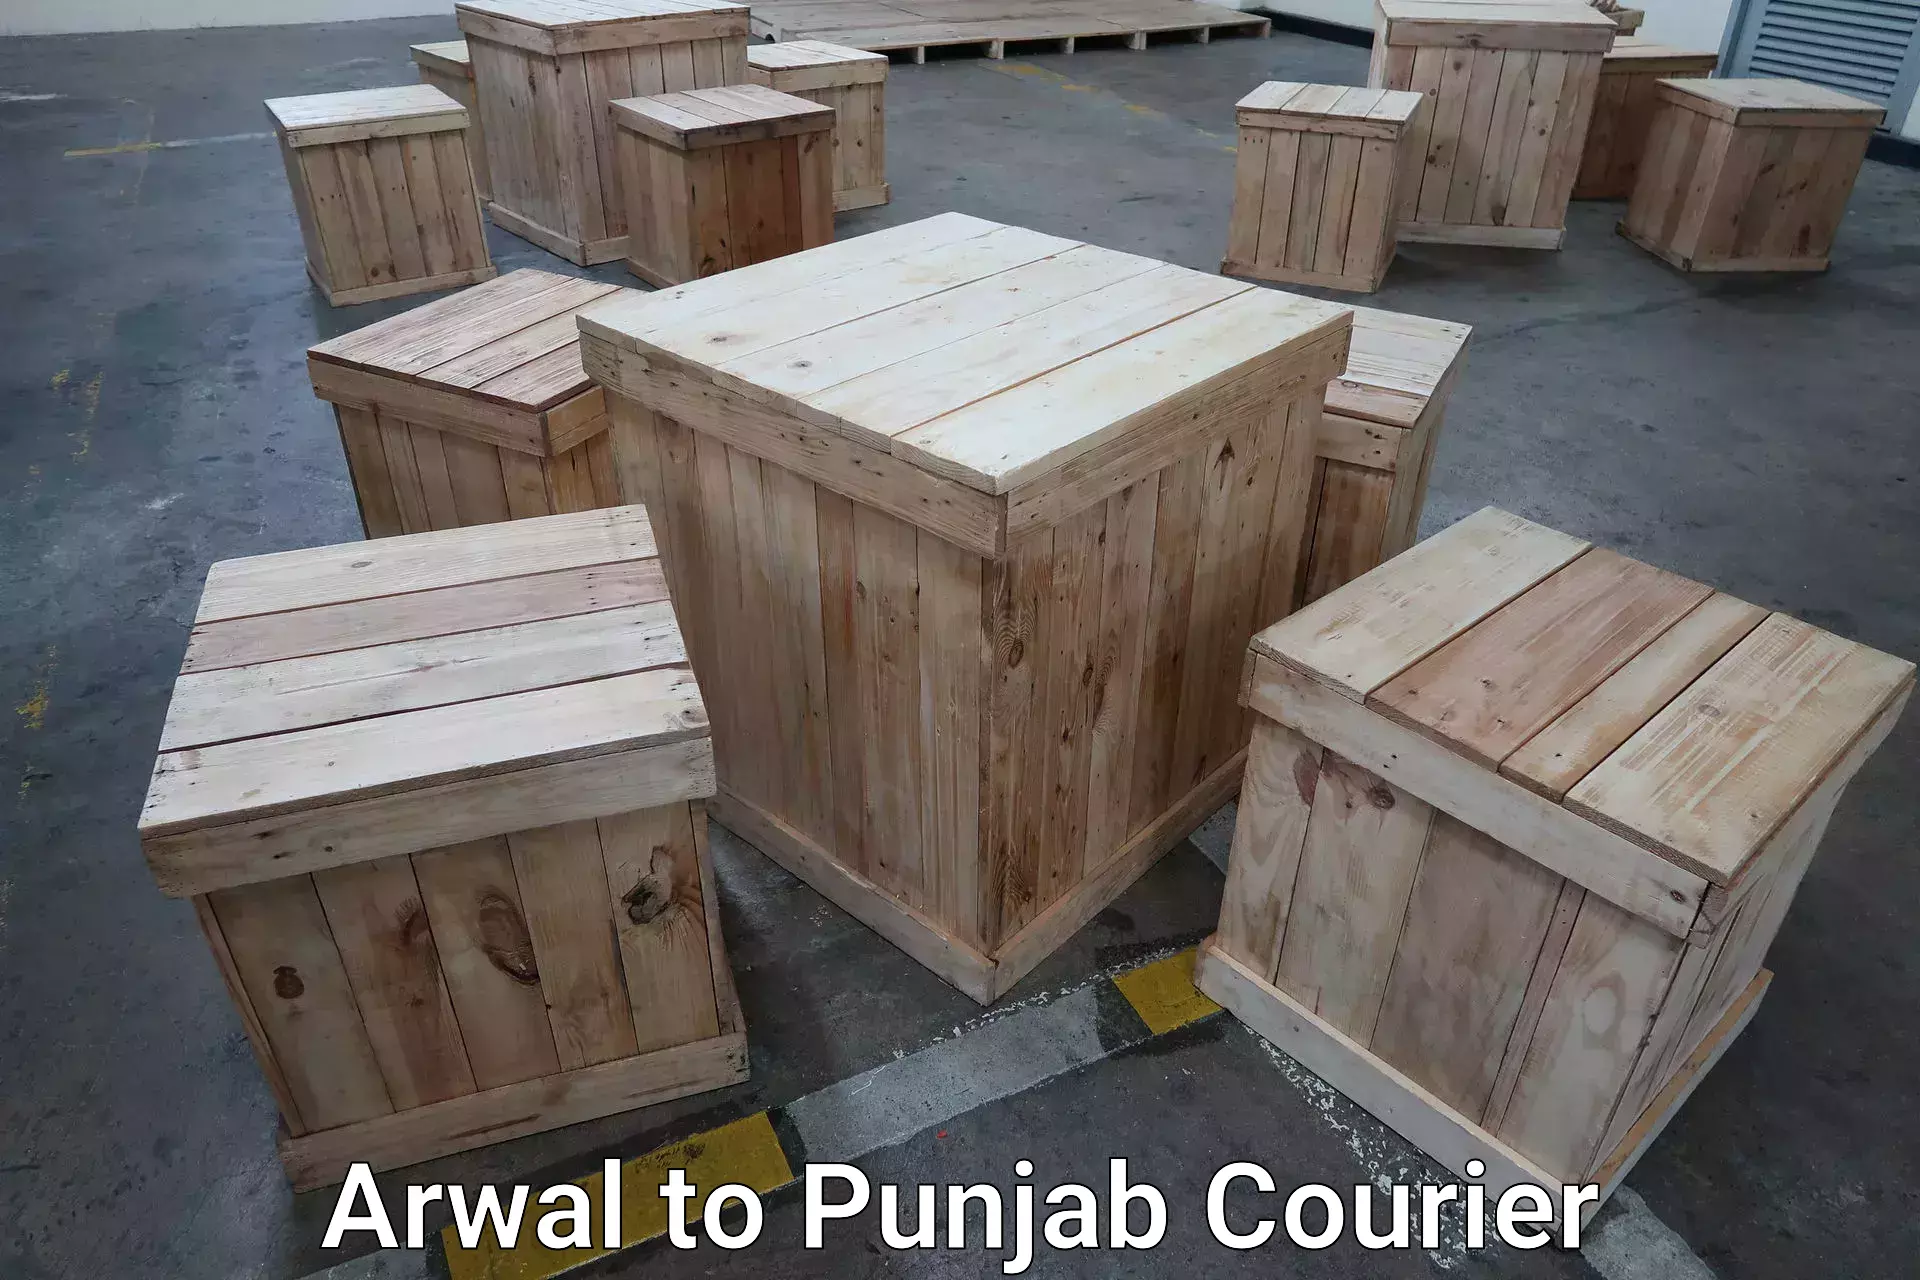 Baggage transport quote Arwal to Punjab